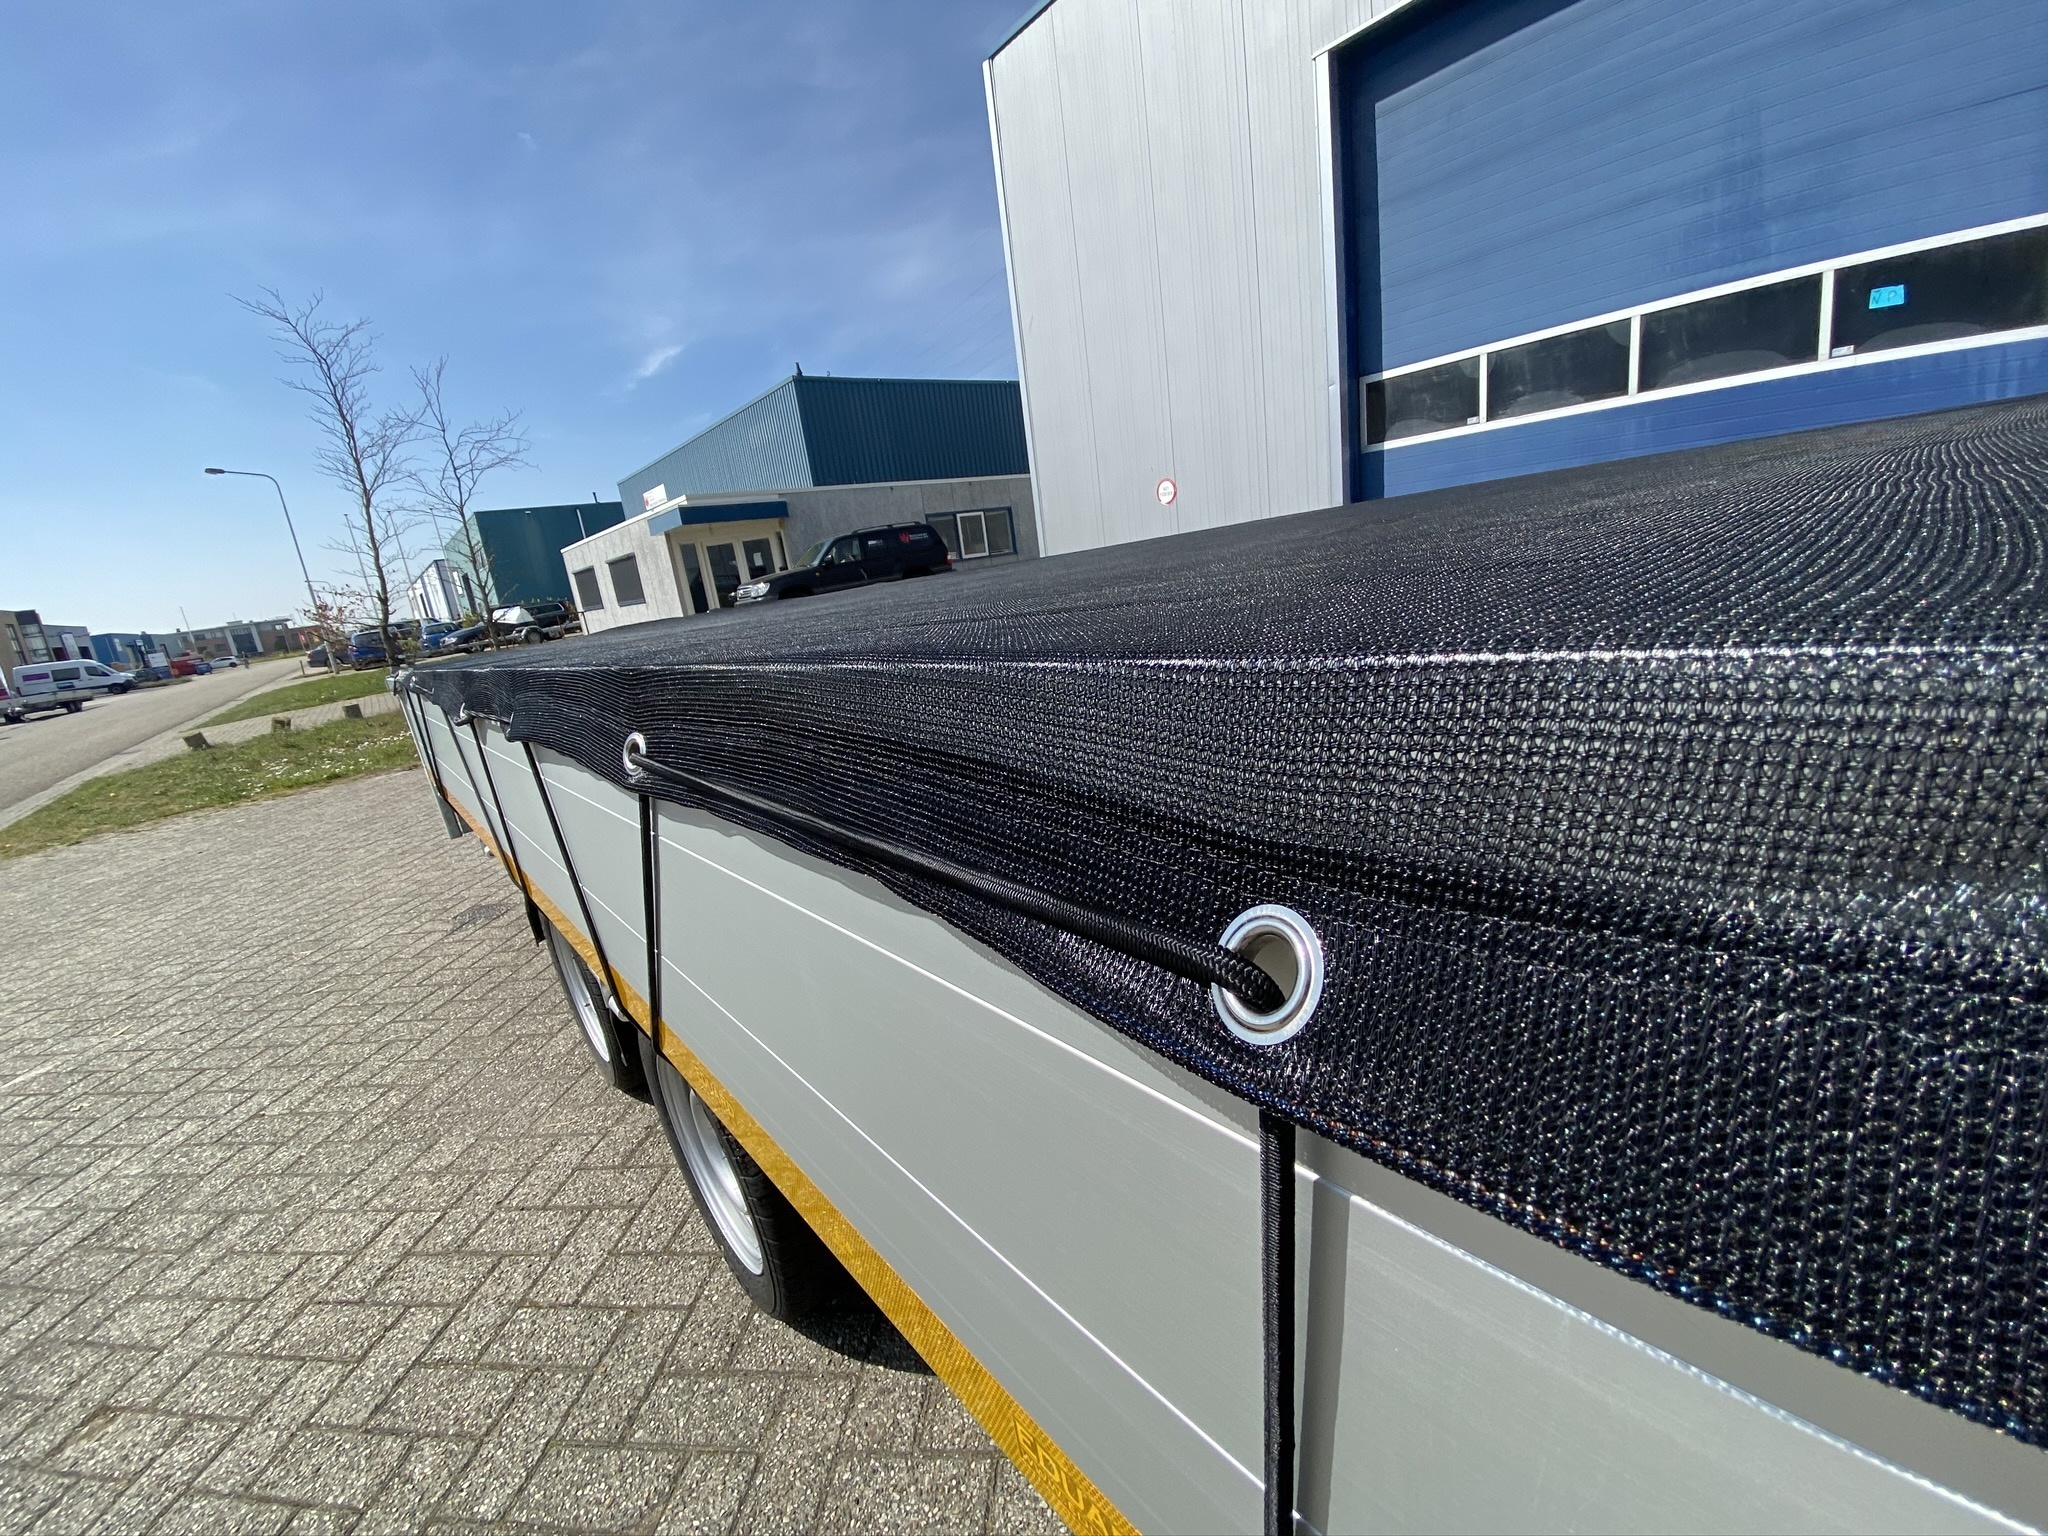 Anhängernetz / Gepäcknetz mit elastischer Kordel - 200 x 300 cm